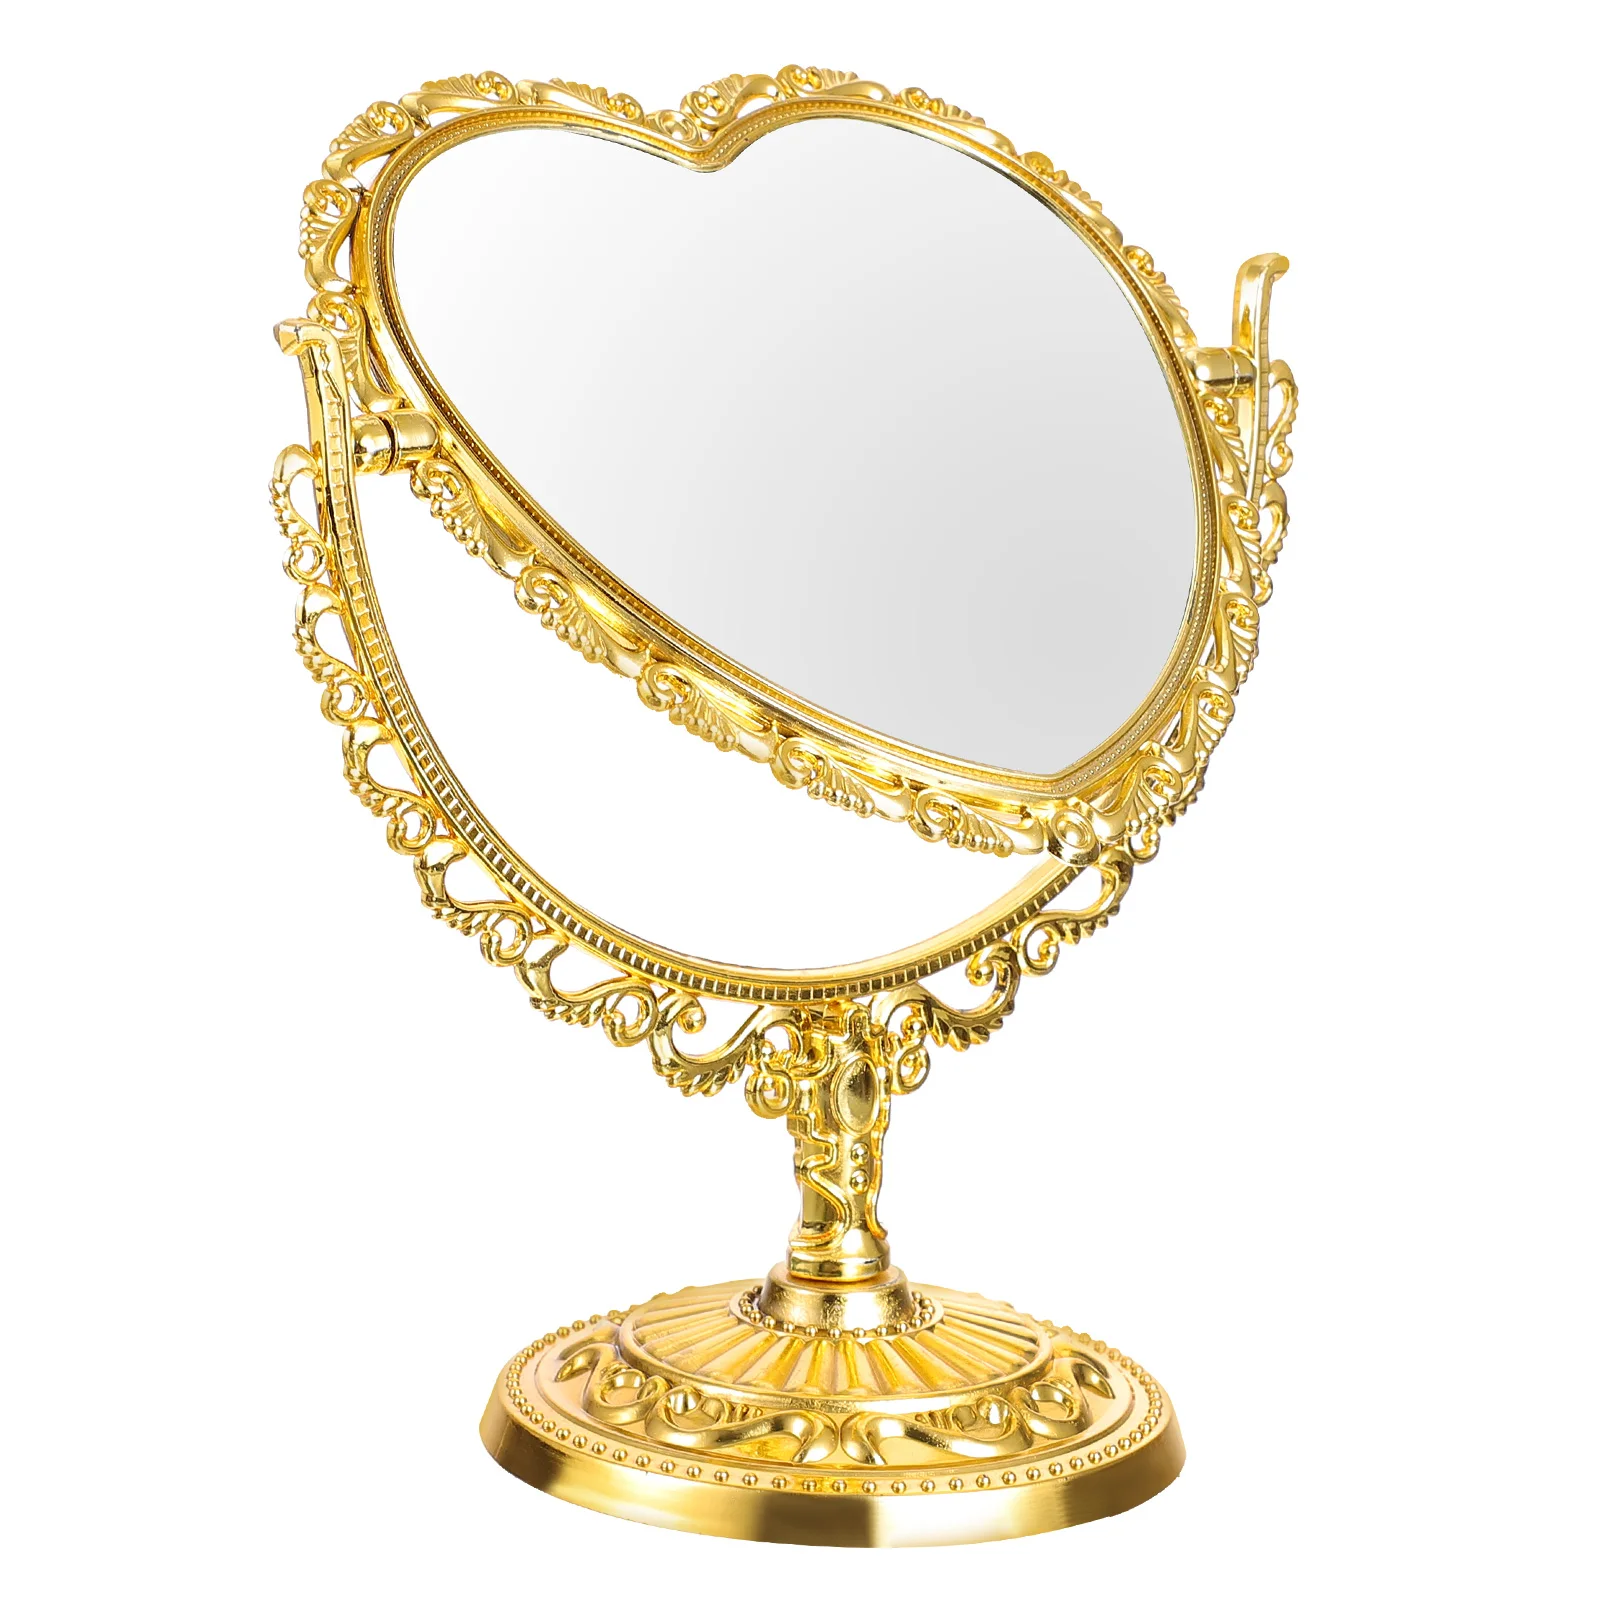 Heart Shaped Mirror Tabletop Vanity Makeup Mirror Double- Mirror for Bathroom Bedroom Dressing Desktop ( Golden )